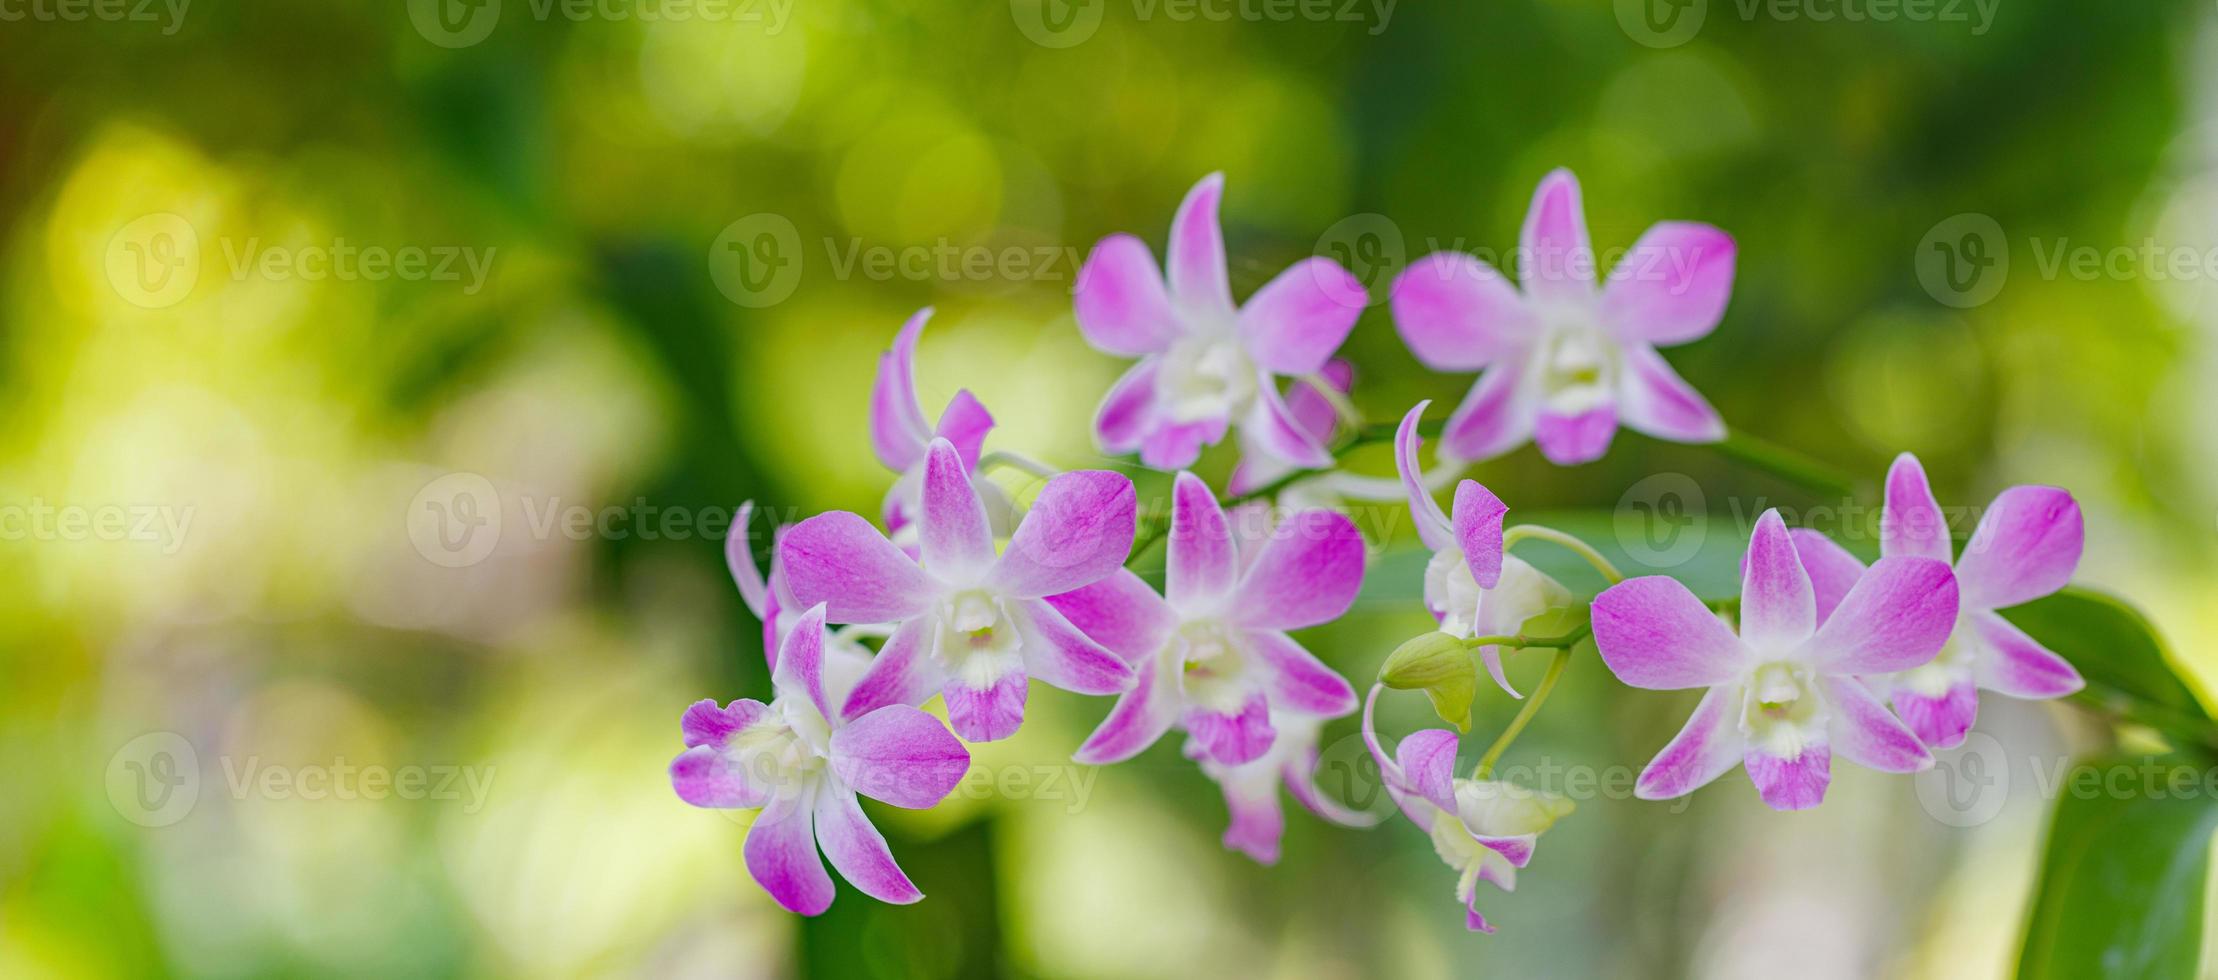 Lila rosafarbene Orchideenblumen blühen auf blauem Blatt, Naturhintergrund, Blumenform, getönter Prozess. Traumblumenromantik, Sommergarten im Freien, tropischer Wald und Blumen. Nahaufnahme blühende Blütenblätter foto